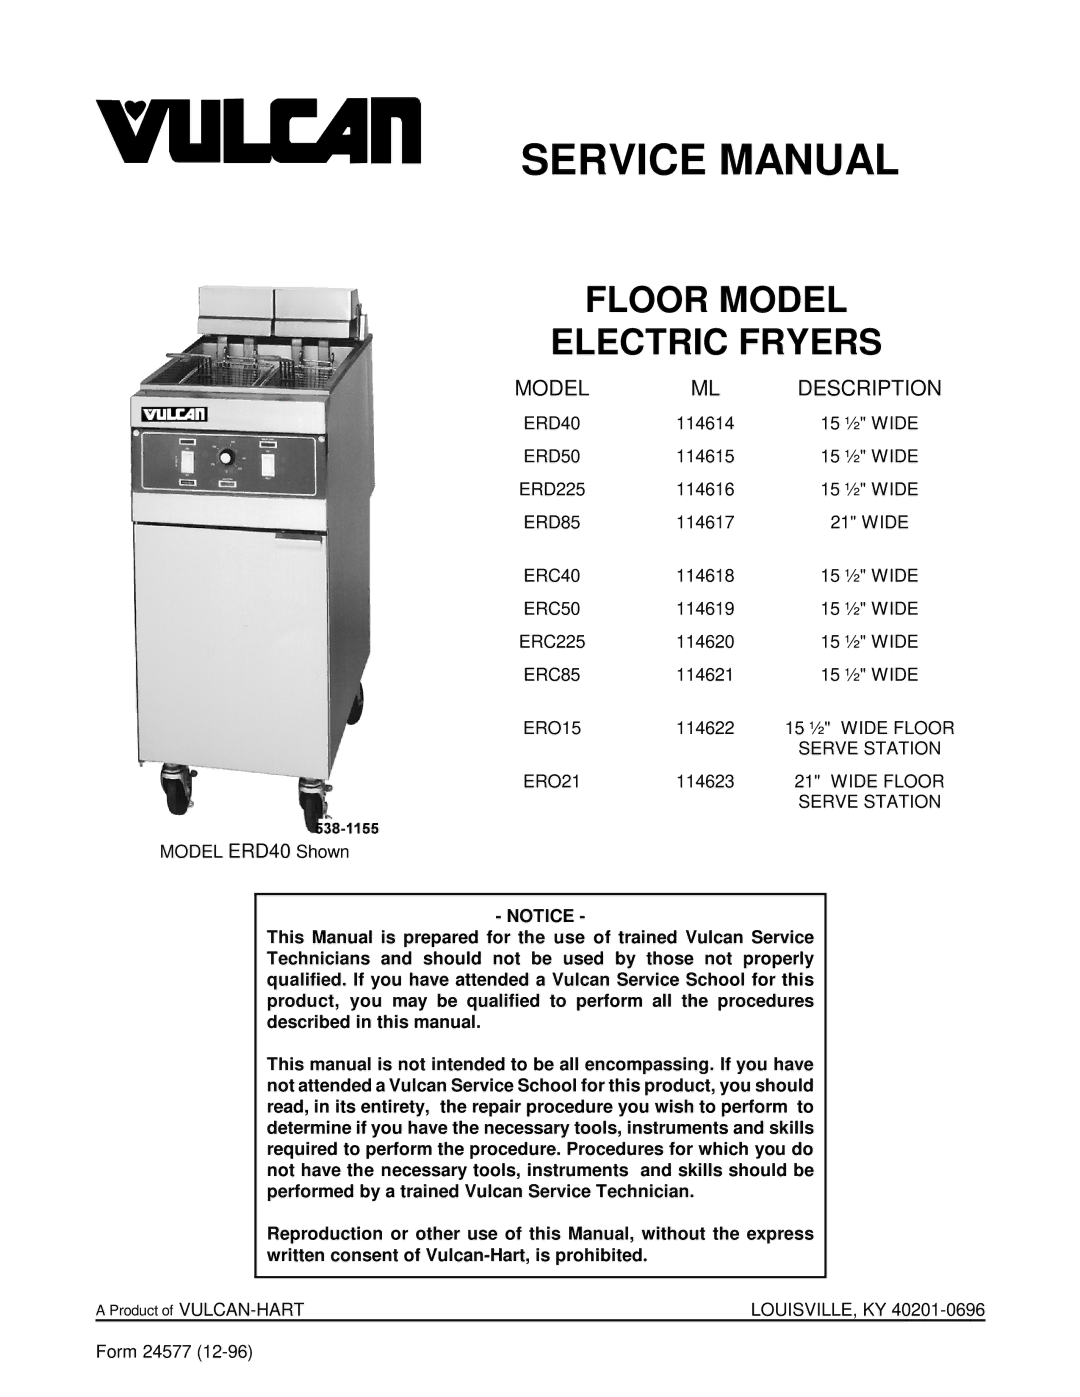 Vulcan-Hart ERD40 service manual Floor Model Electric Fryers 